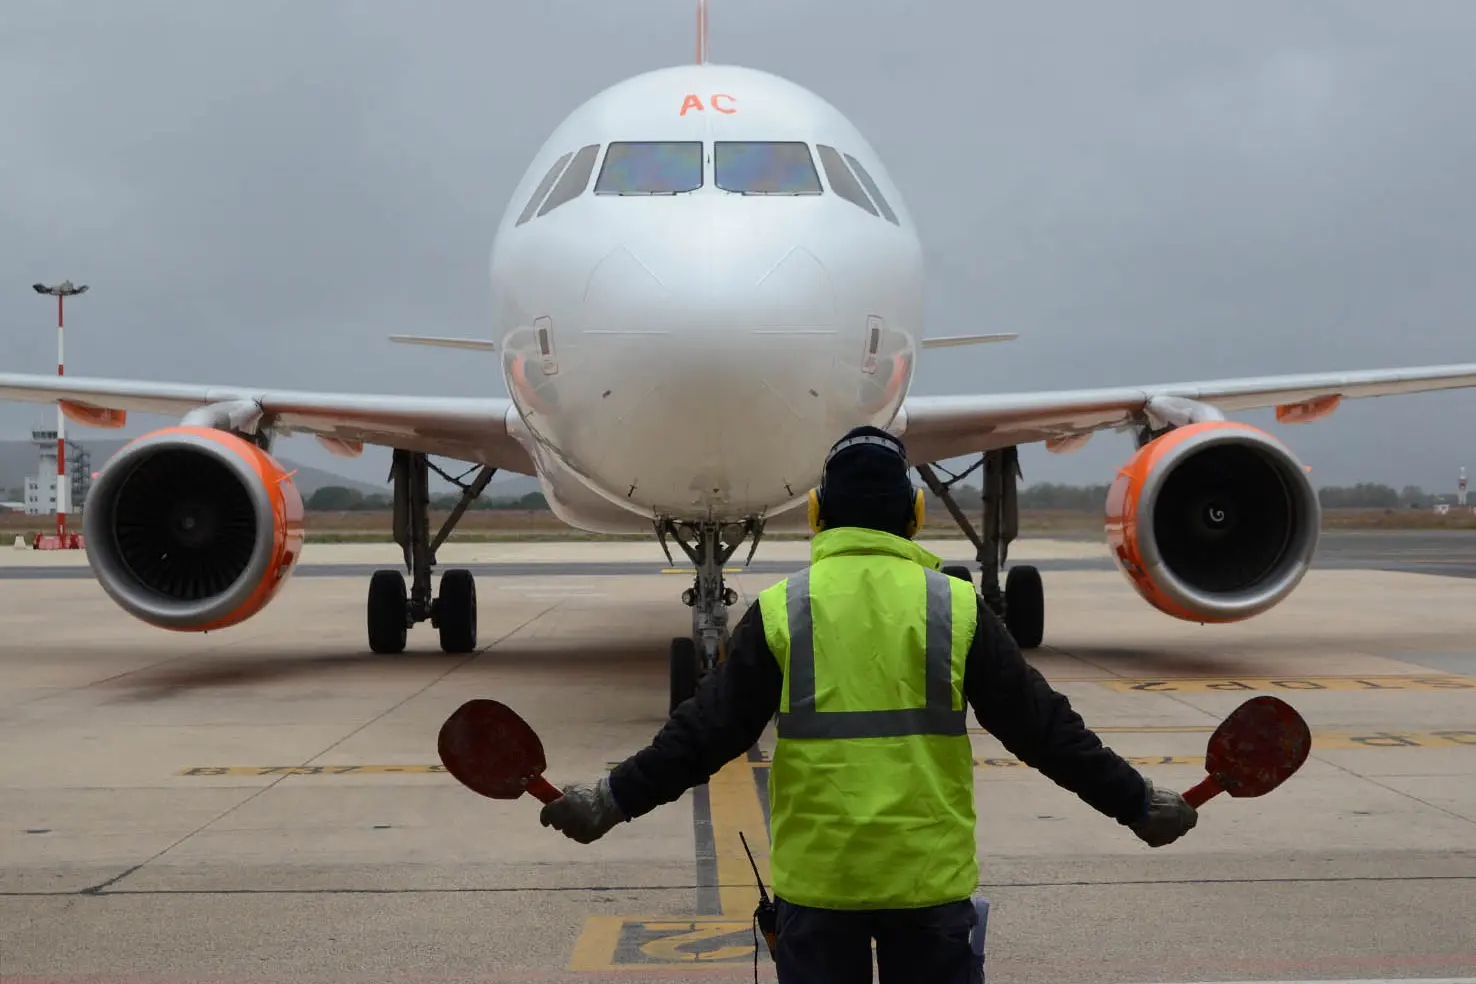 l'areo Easy Jet in arrivo da Londra all'aeroporto di Alghero - foto Gloria CAlvi 28.11.2017